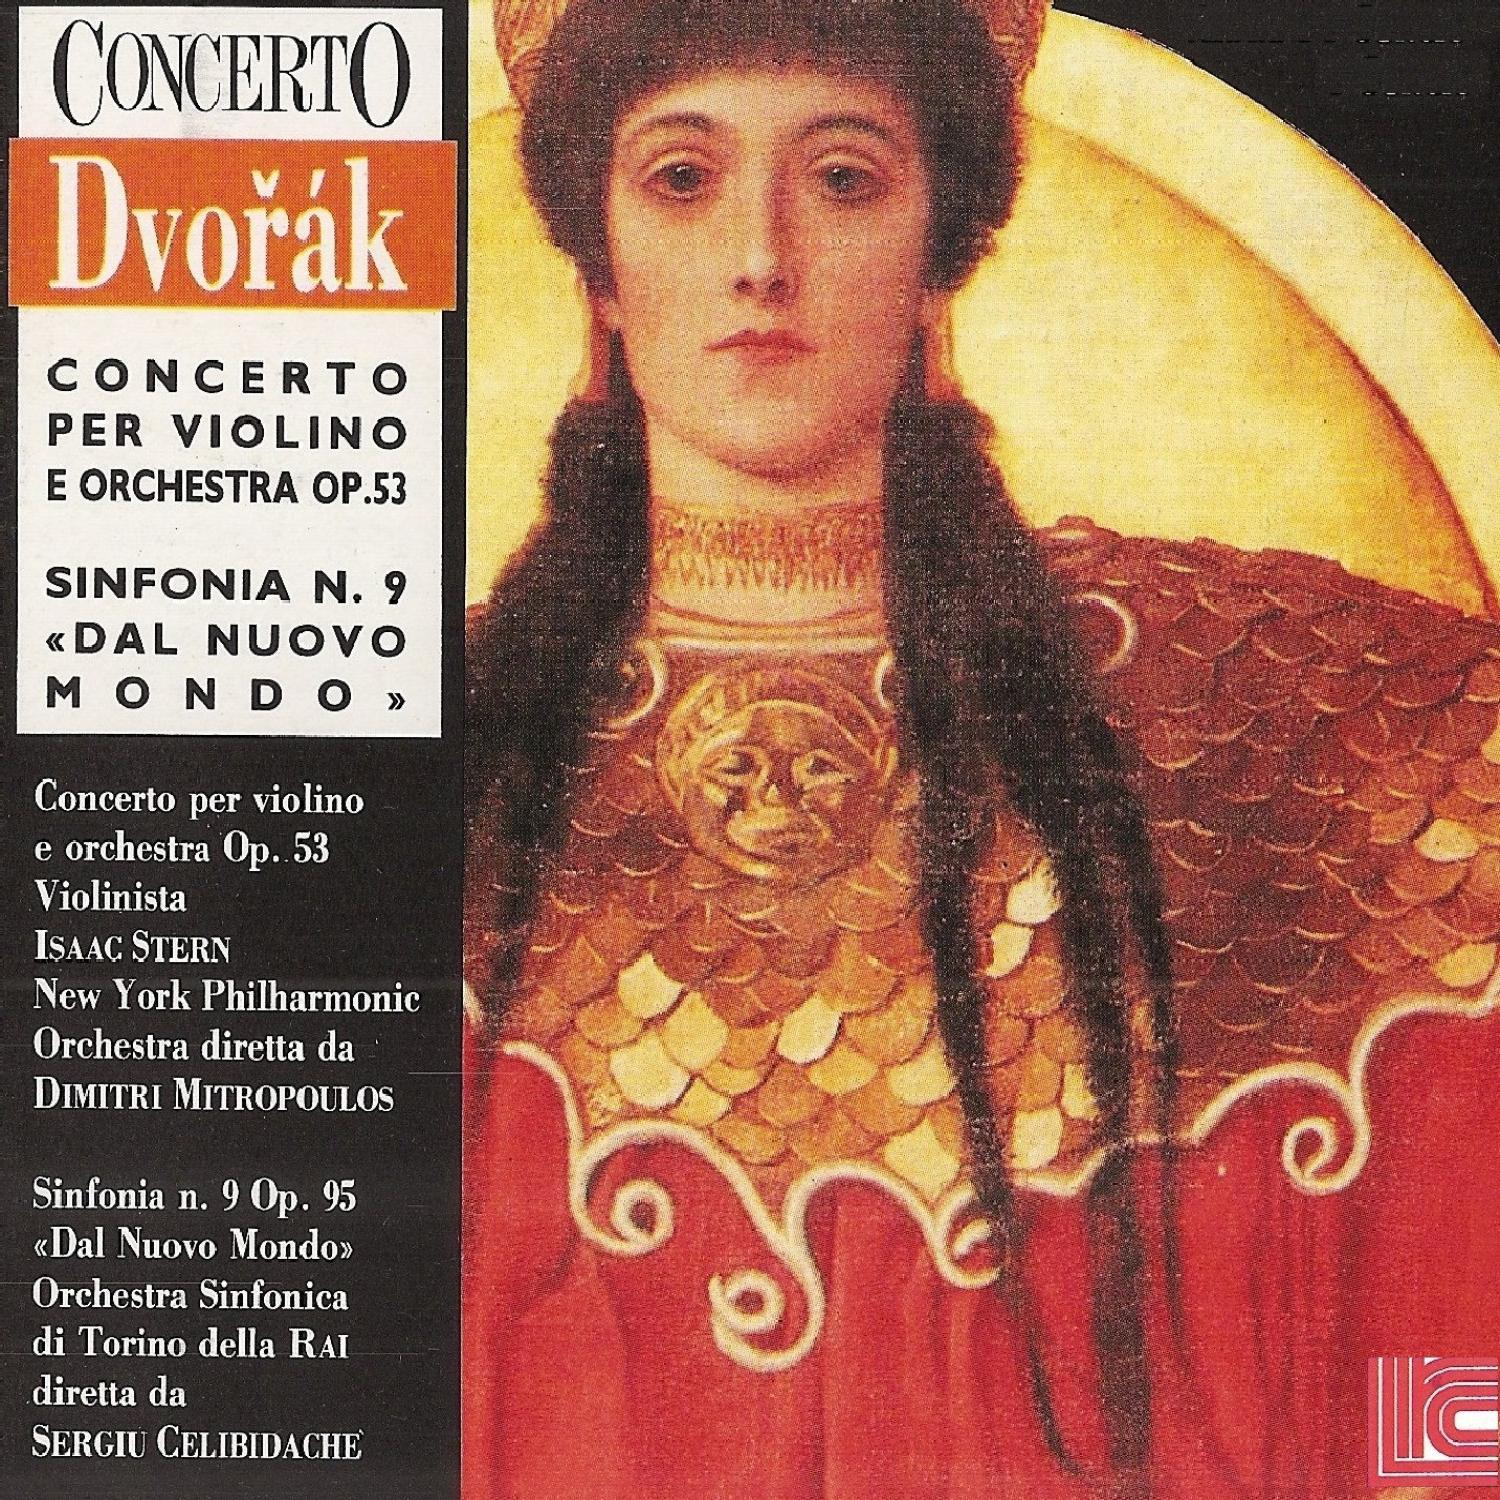 Dvoa k: Concerto for Violin, Symphony No. 9